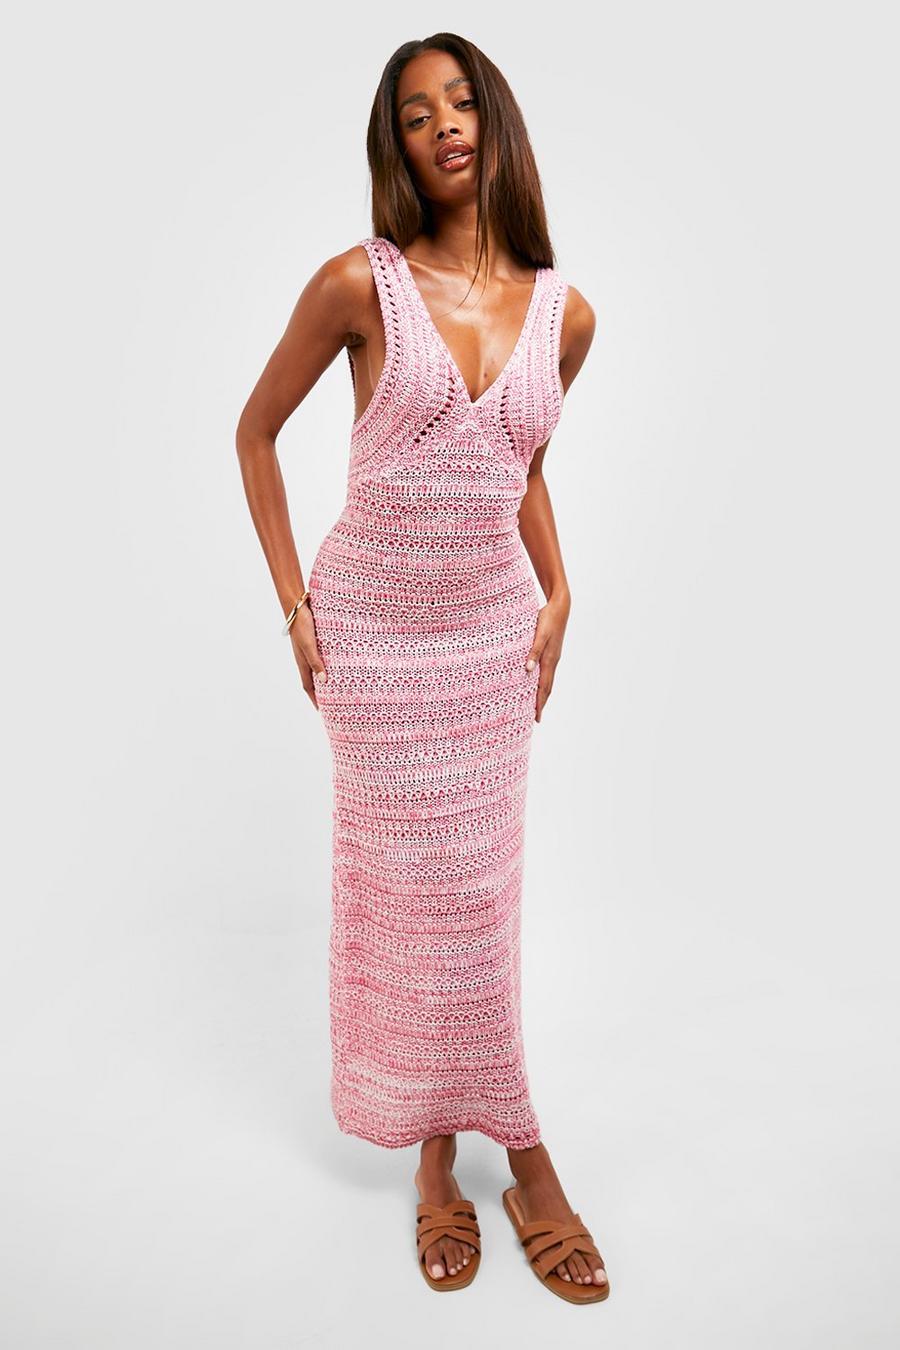 Hot pink Premium Ombre Marl Knit Crochet Maxi Dress